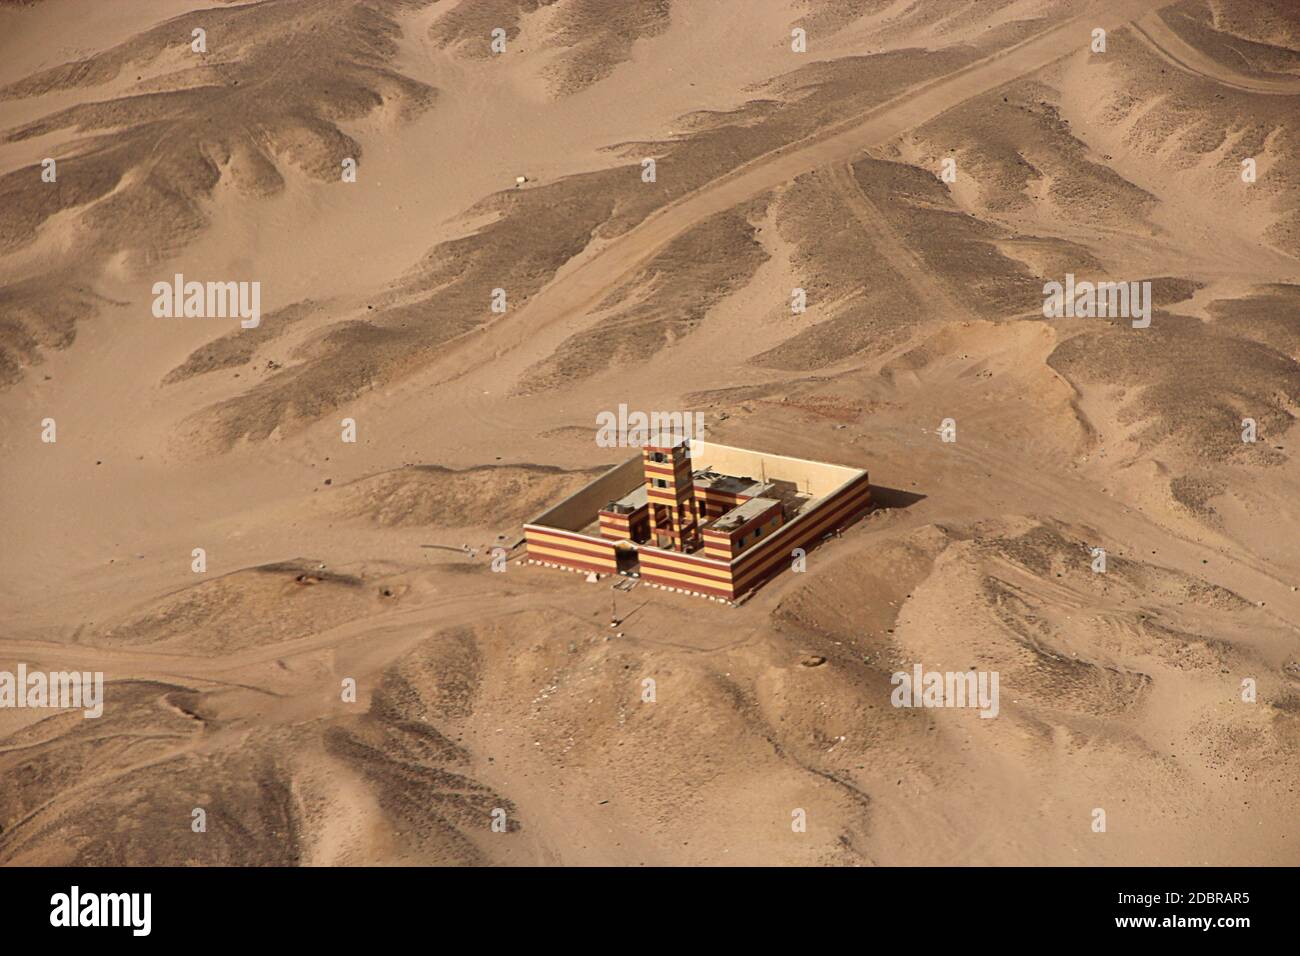 Vue aérienne avec bâtiment seul dans le désert, en Egypte. Image panoramique. Maison égyptienne vue d'en haut. Panorama aérien du bâtiment solitaire debout dans d Banque D'Images